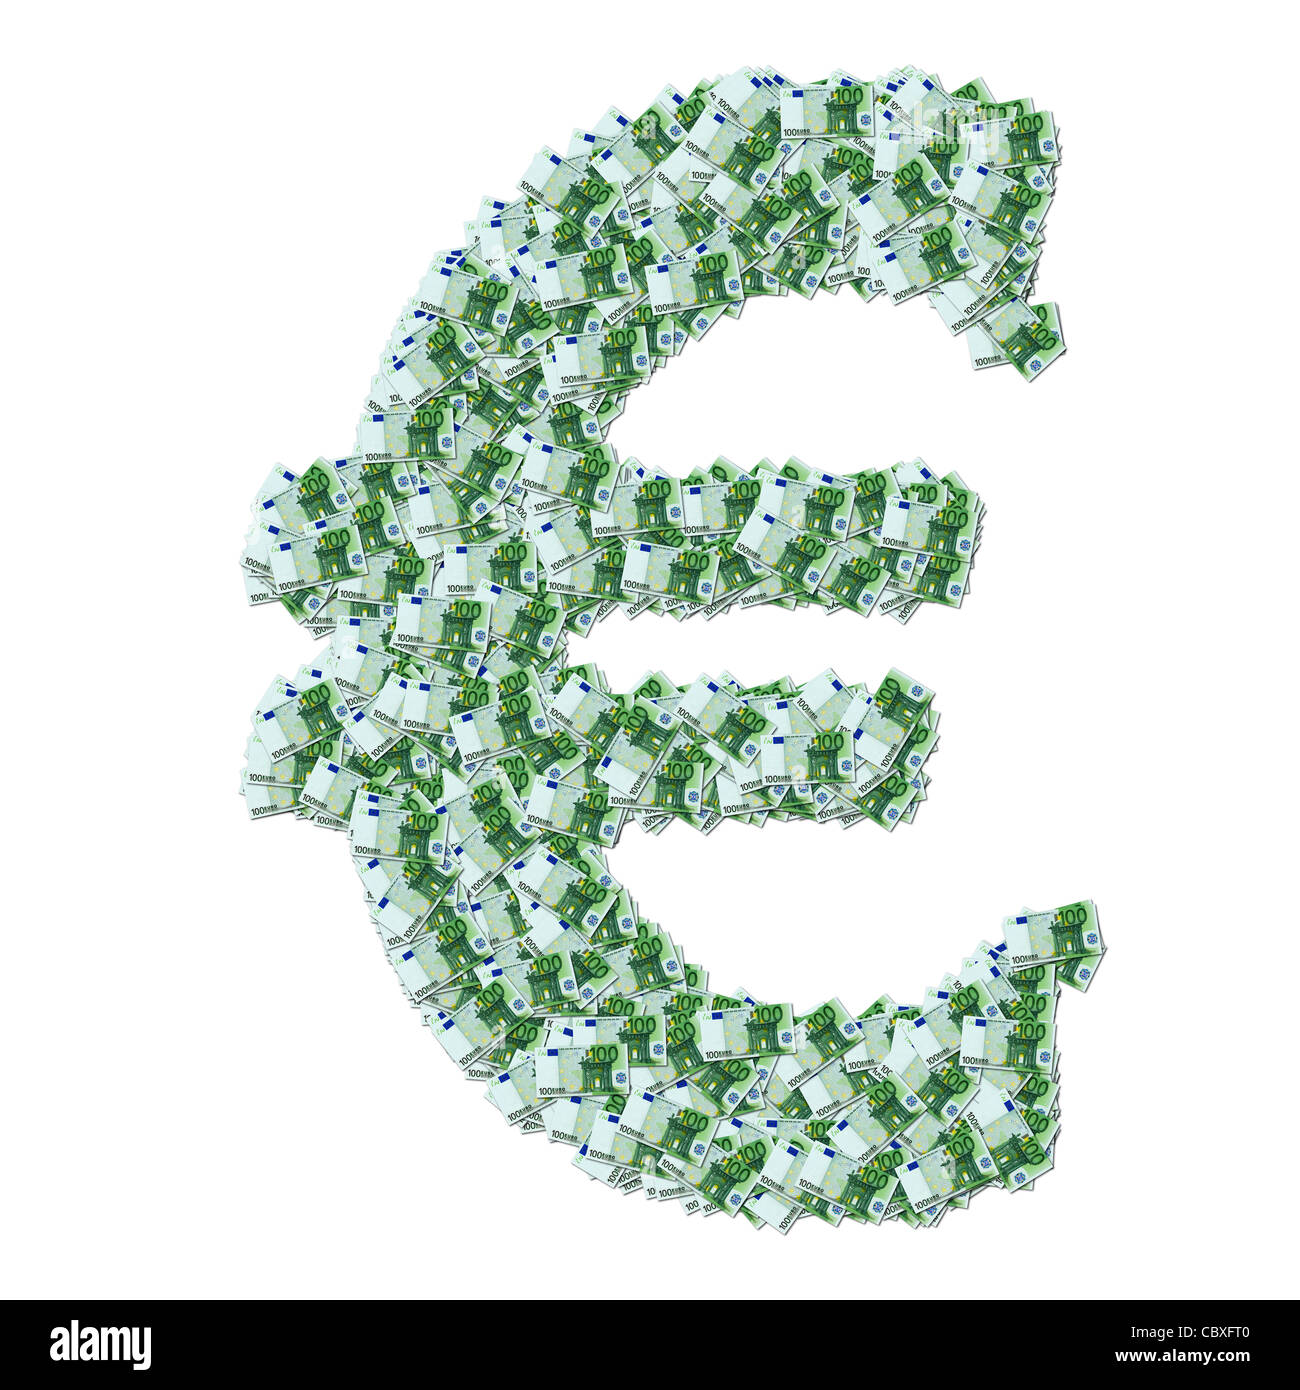 Il simbolo dell'euro realizzato con € 100 banconote. Simboli € composé à partir de billette de Banque de 100 euro. Foto Stock